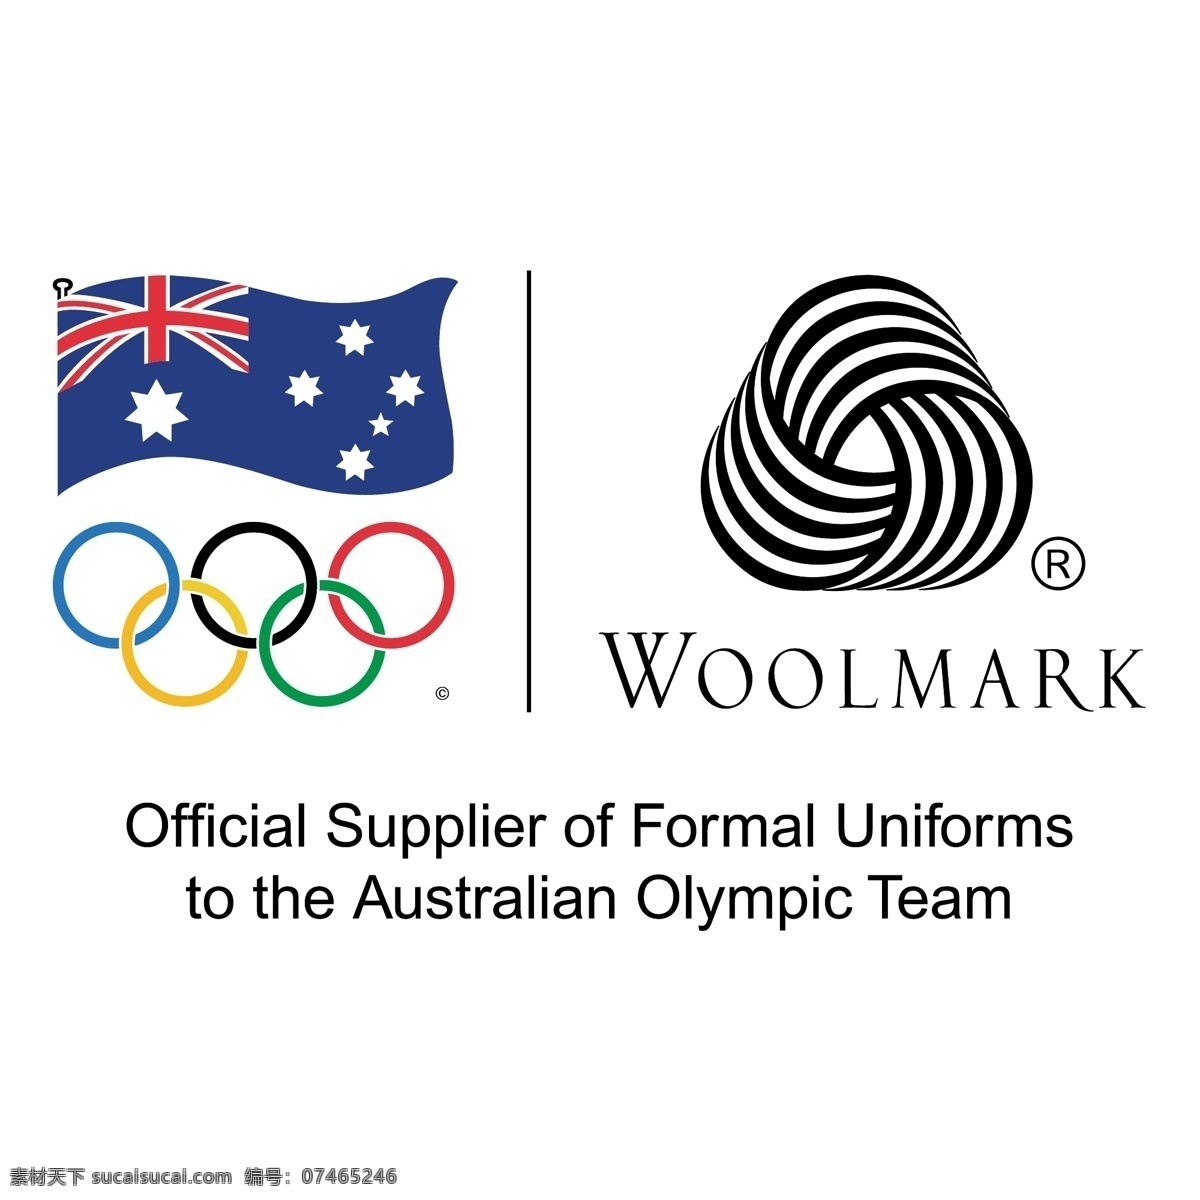 国际 羊毛 局 官方 供应商 正式 制服 澳大利亚 奥运 代表队 纯羊毛标志 正式的 矢量图 其他矢量图